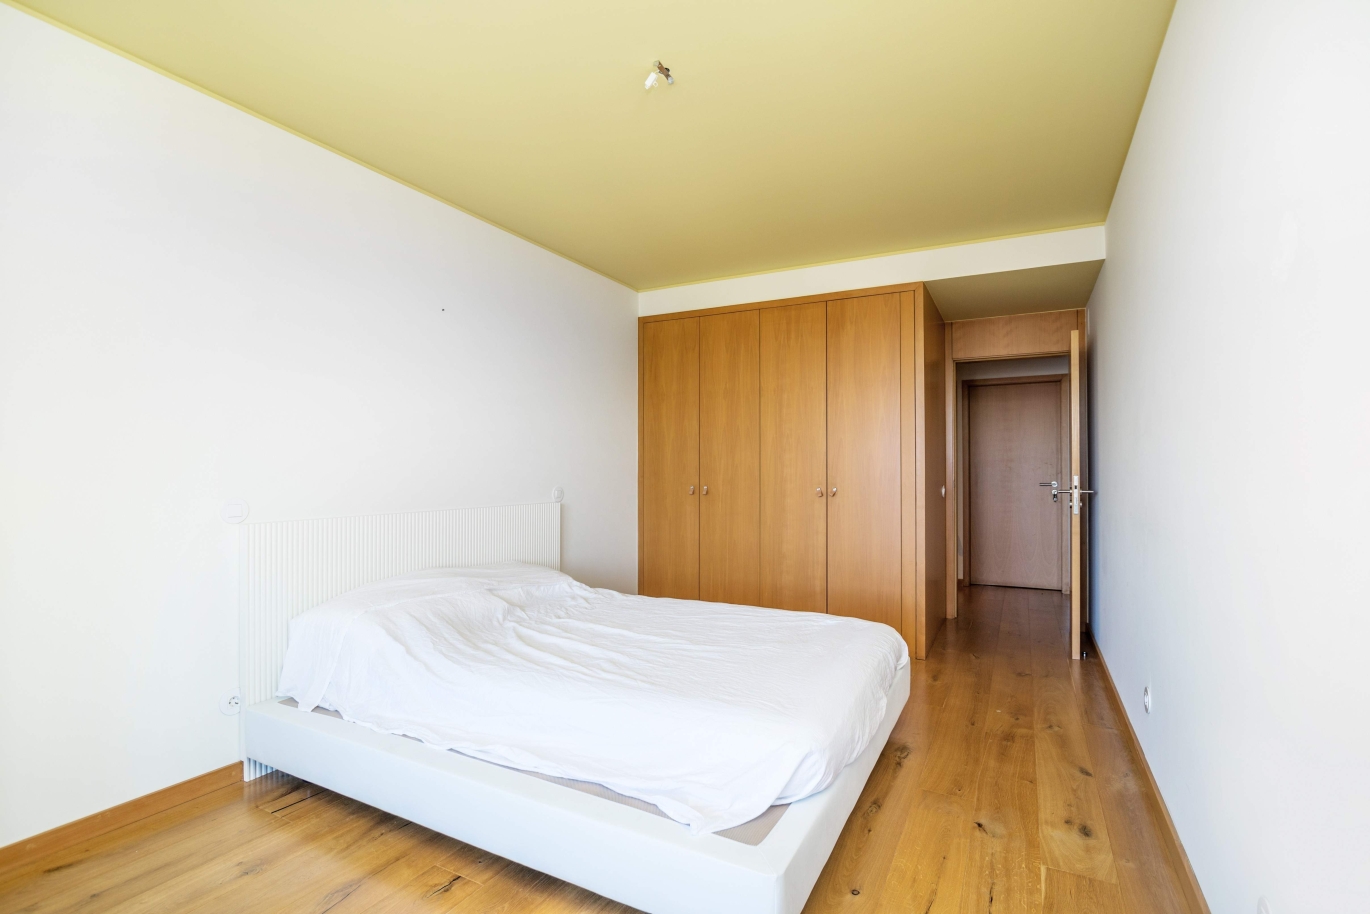 Apartamento en alquiler en condominio cerrado, V. N. Gaia, Porto, Portugal_146635